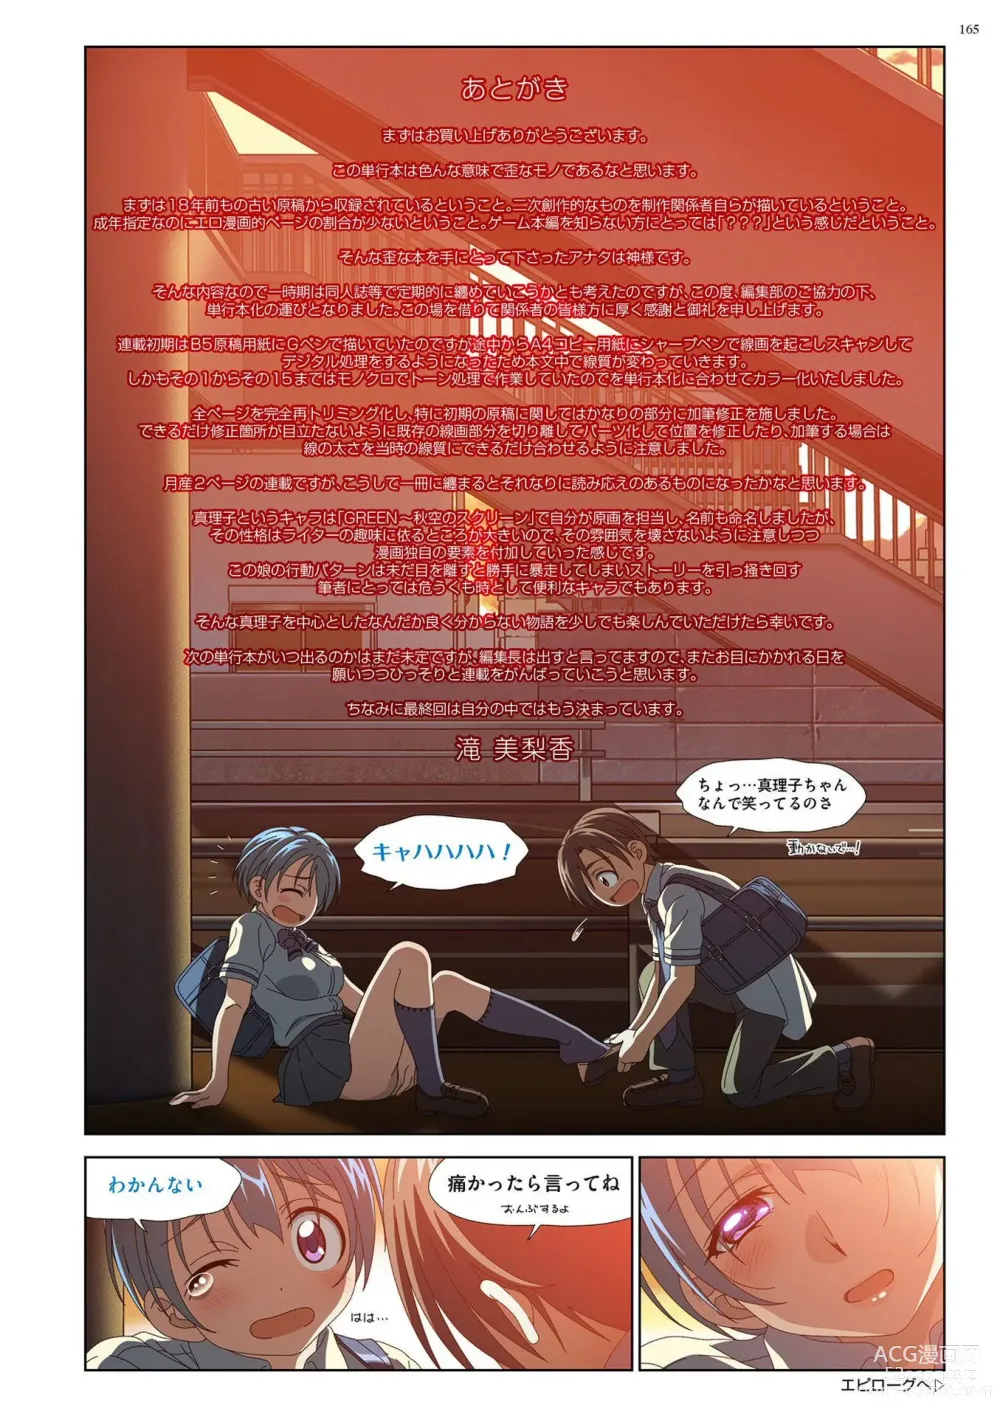 Page 164 of manga Mariko-chan ga Iku!!